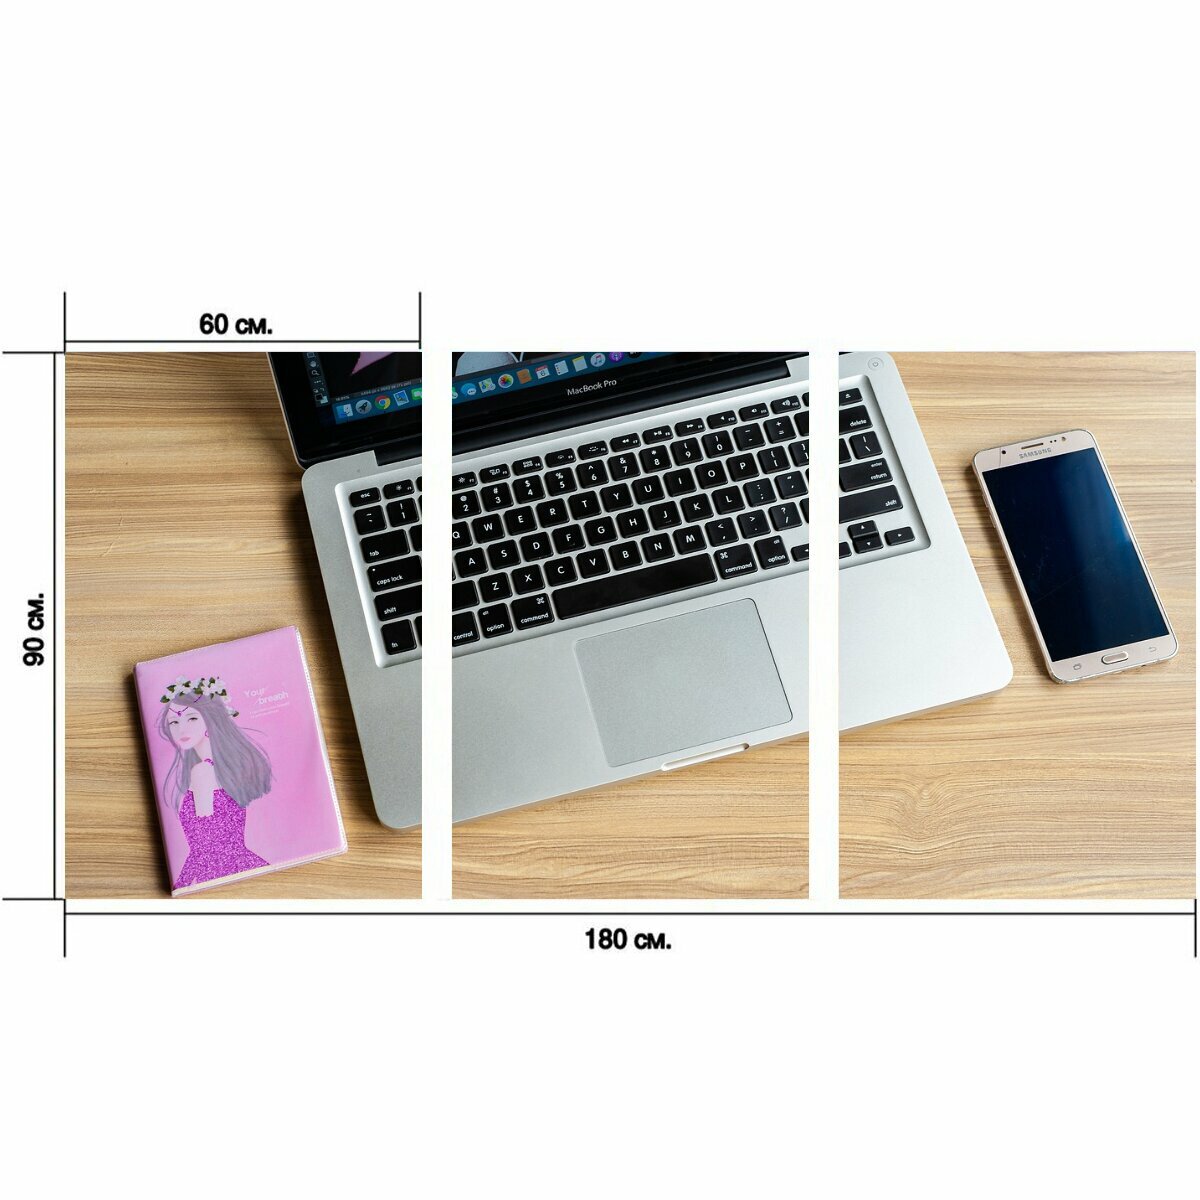 Модульный постер "Ноутбук, стол письменный, устройство" 180 x 90 см. для интерьера